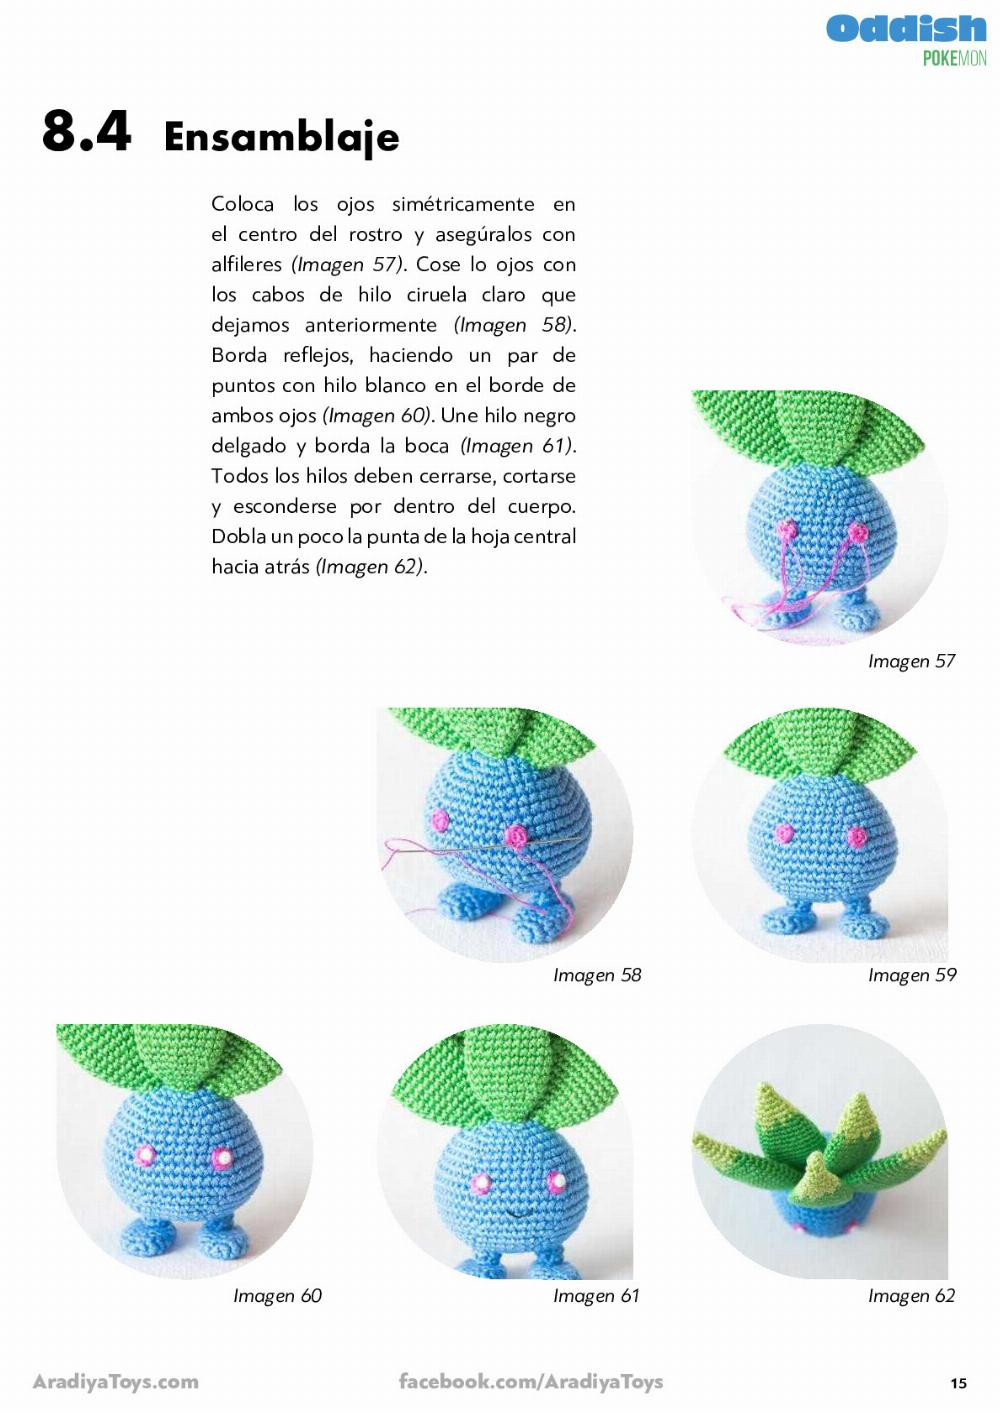 bulbasaur Pokemon crochet pattern